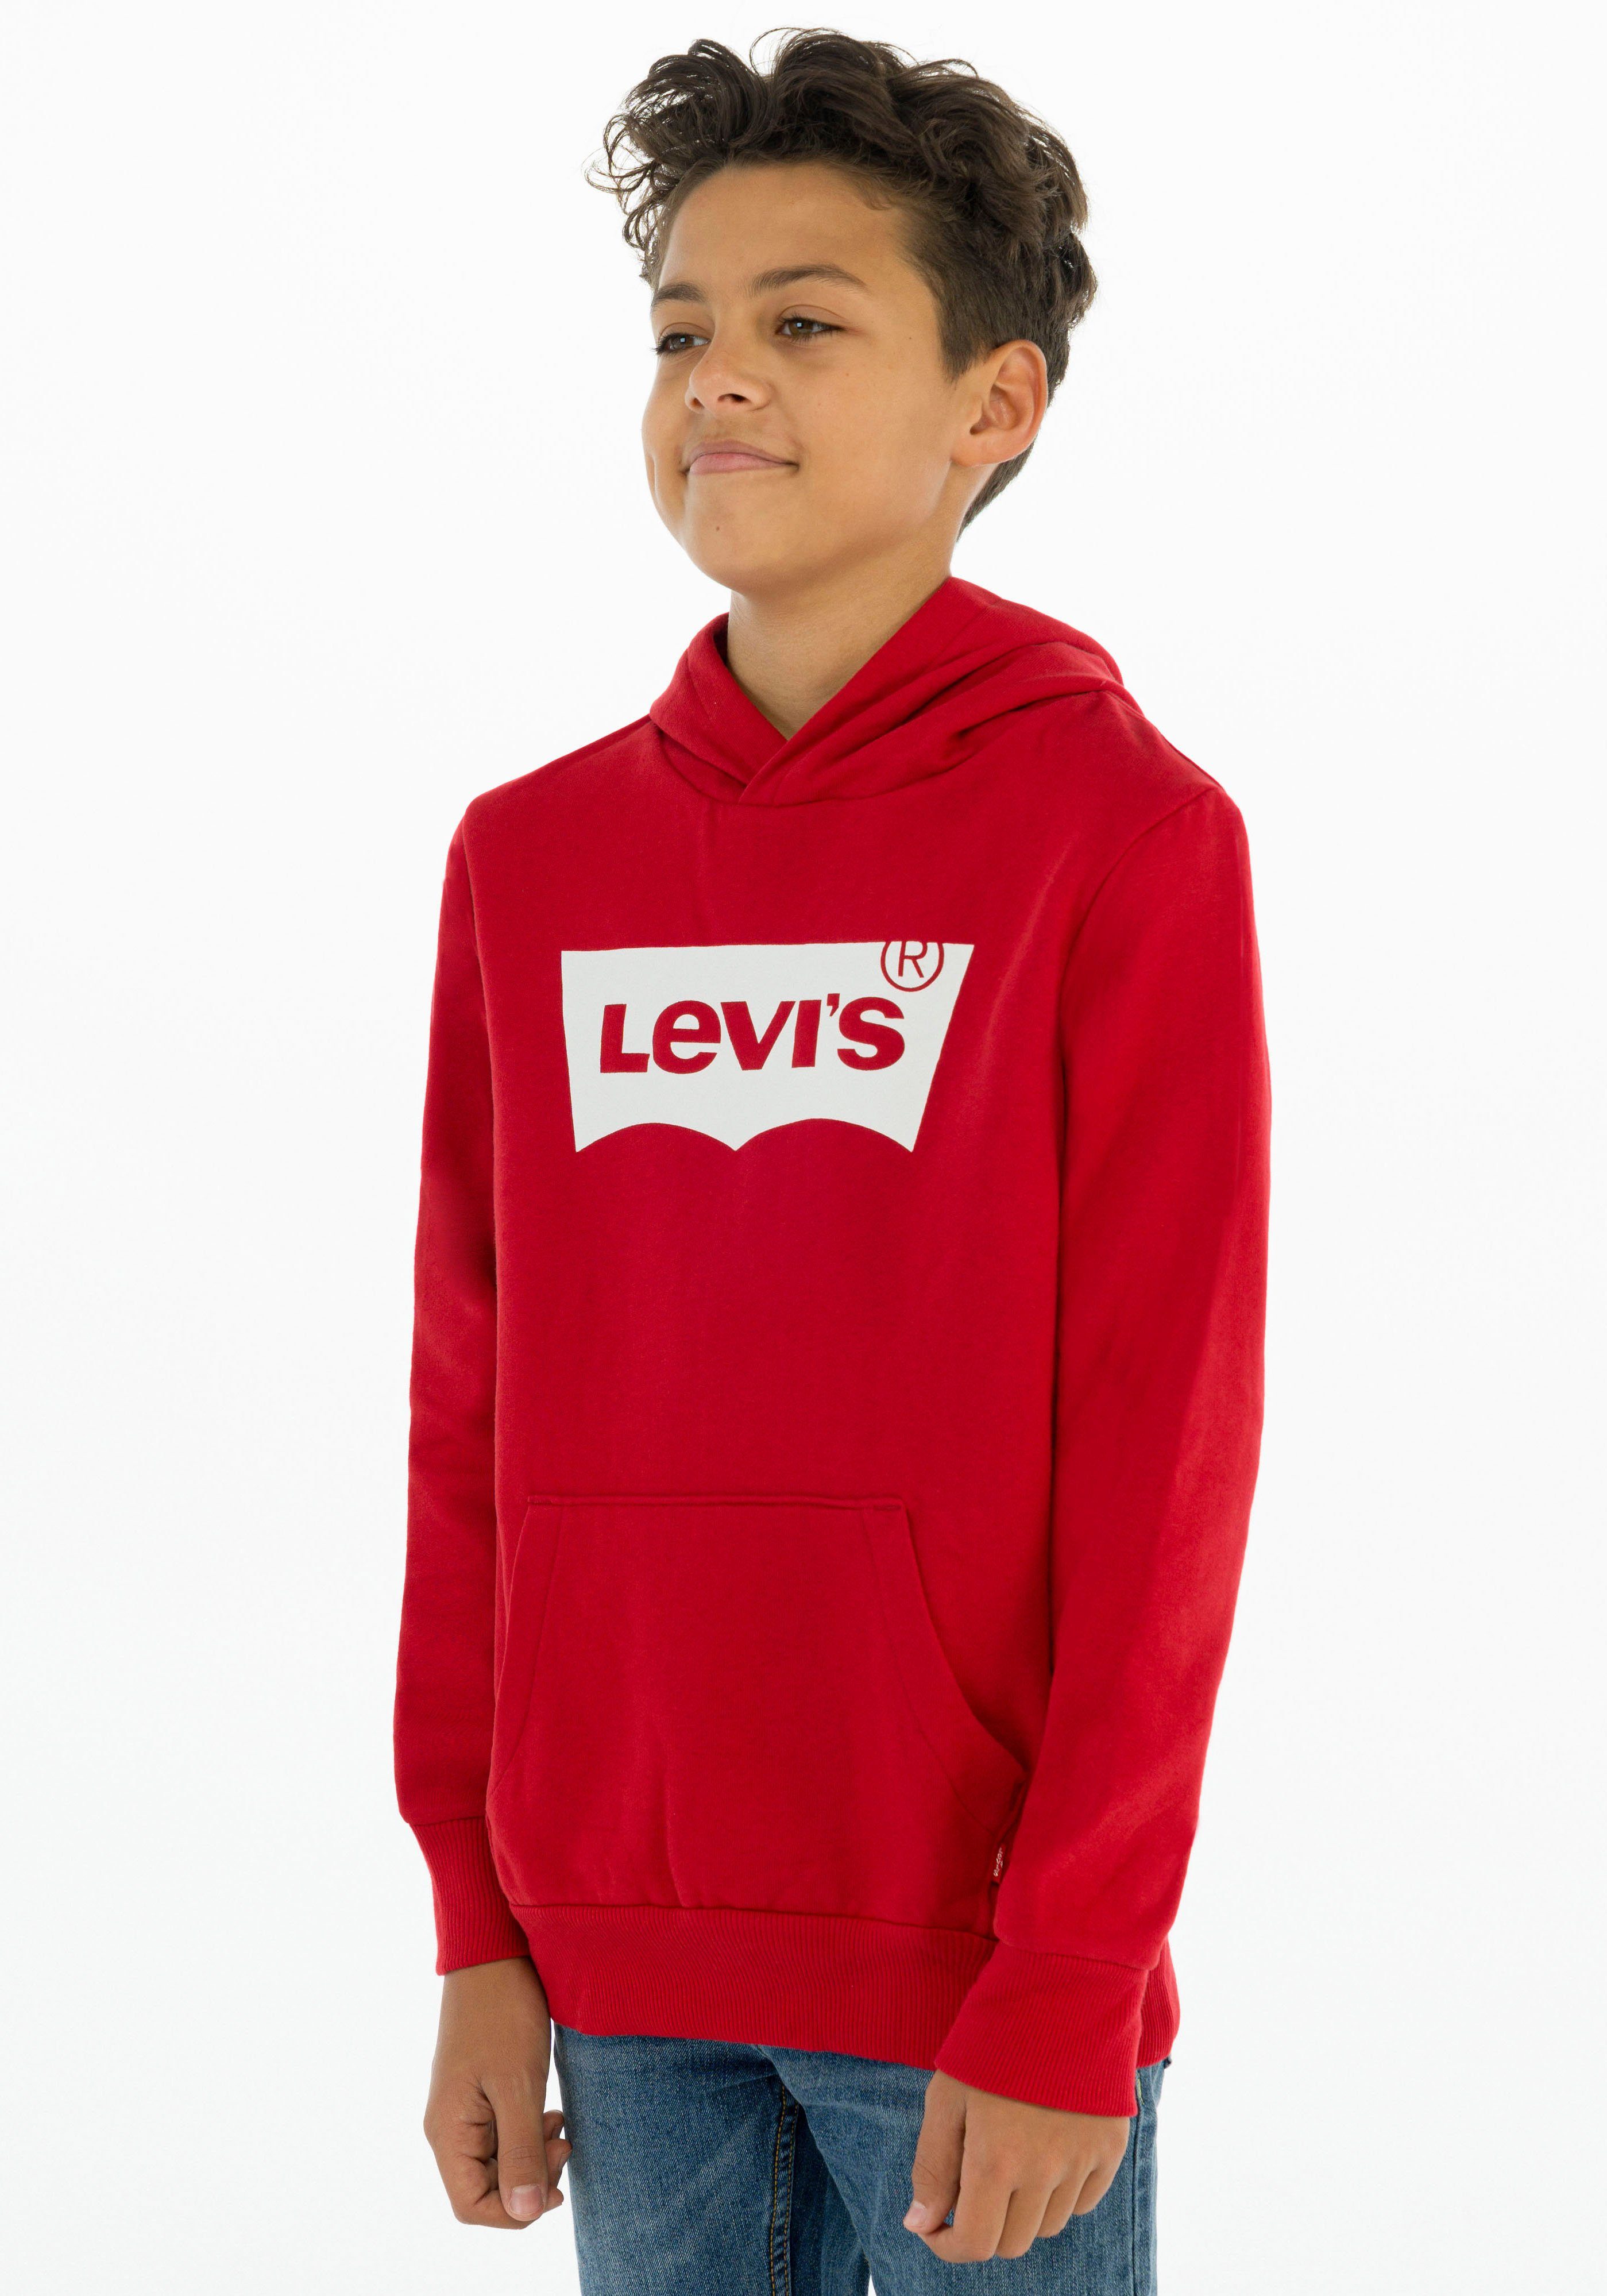 [Sie können echte Produkte zu günstigen Preisen kaufen!] BATWING Kapuzensweatshirt Levi's® BOYS HOODIE red Kids for